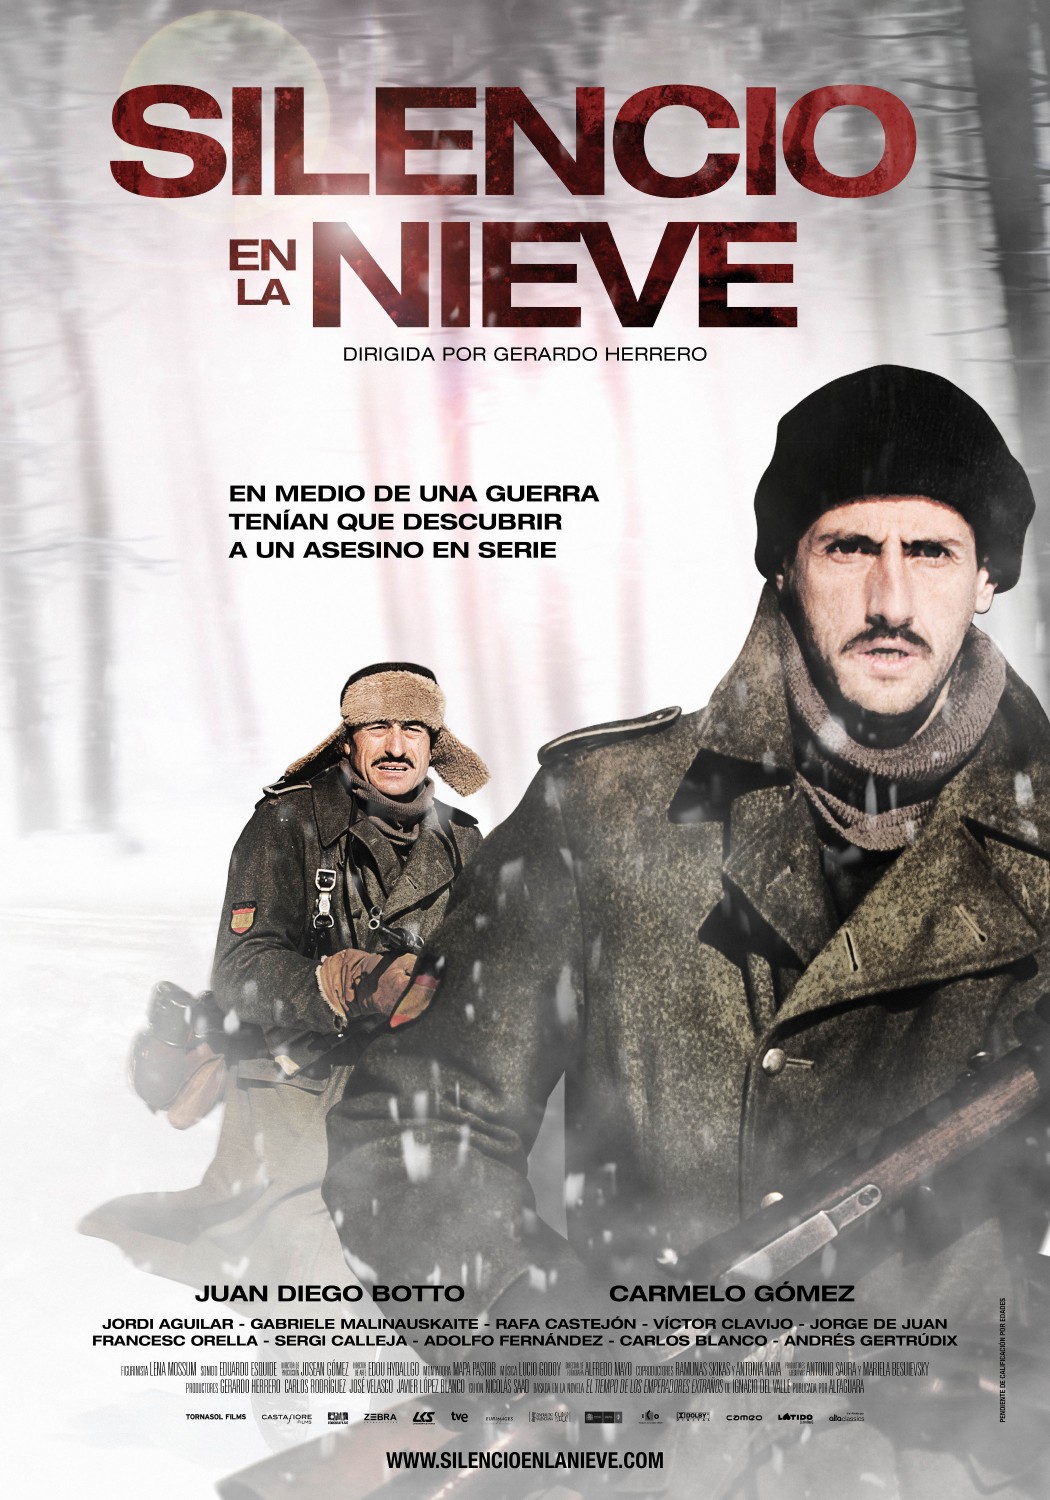 Extra Large Movie Poster Image for Silencio en la nieve (#1 of 2)